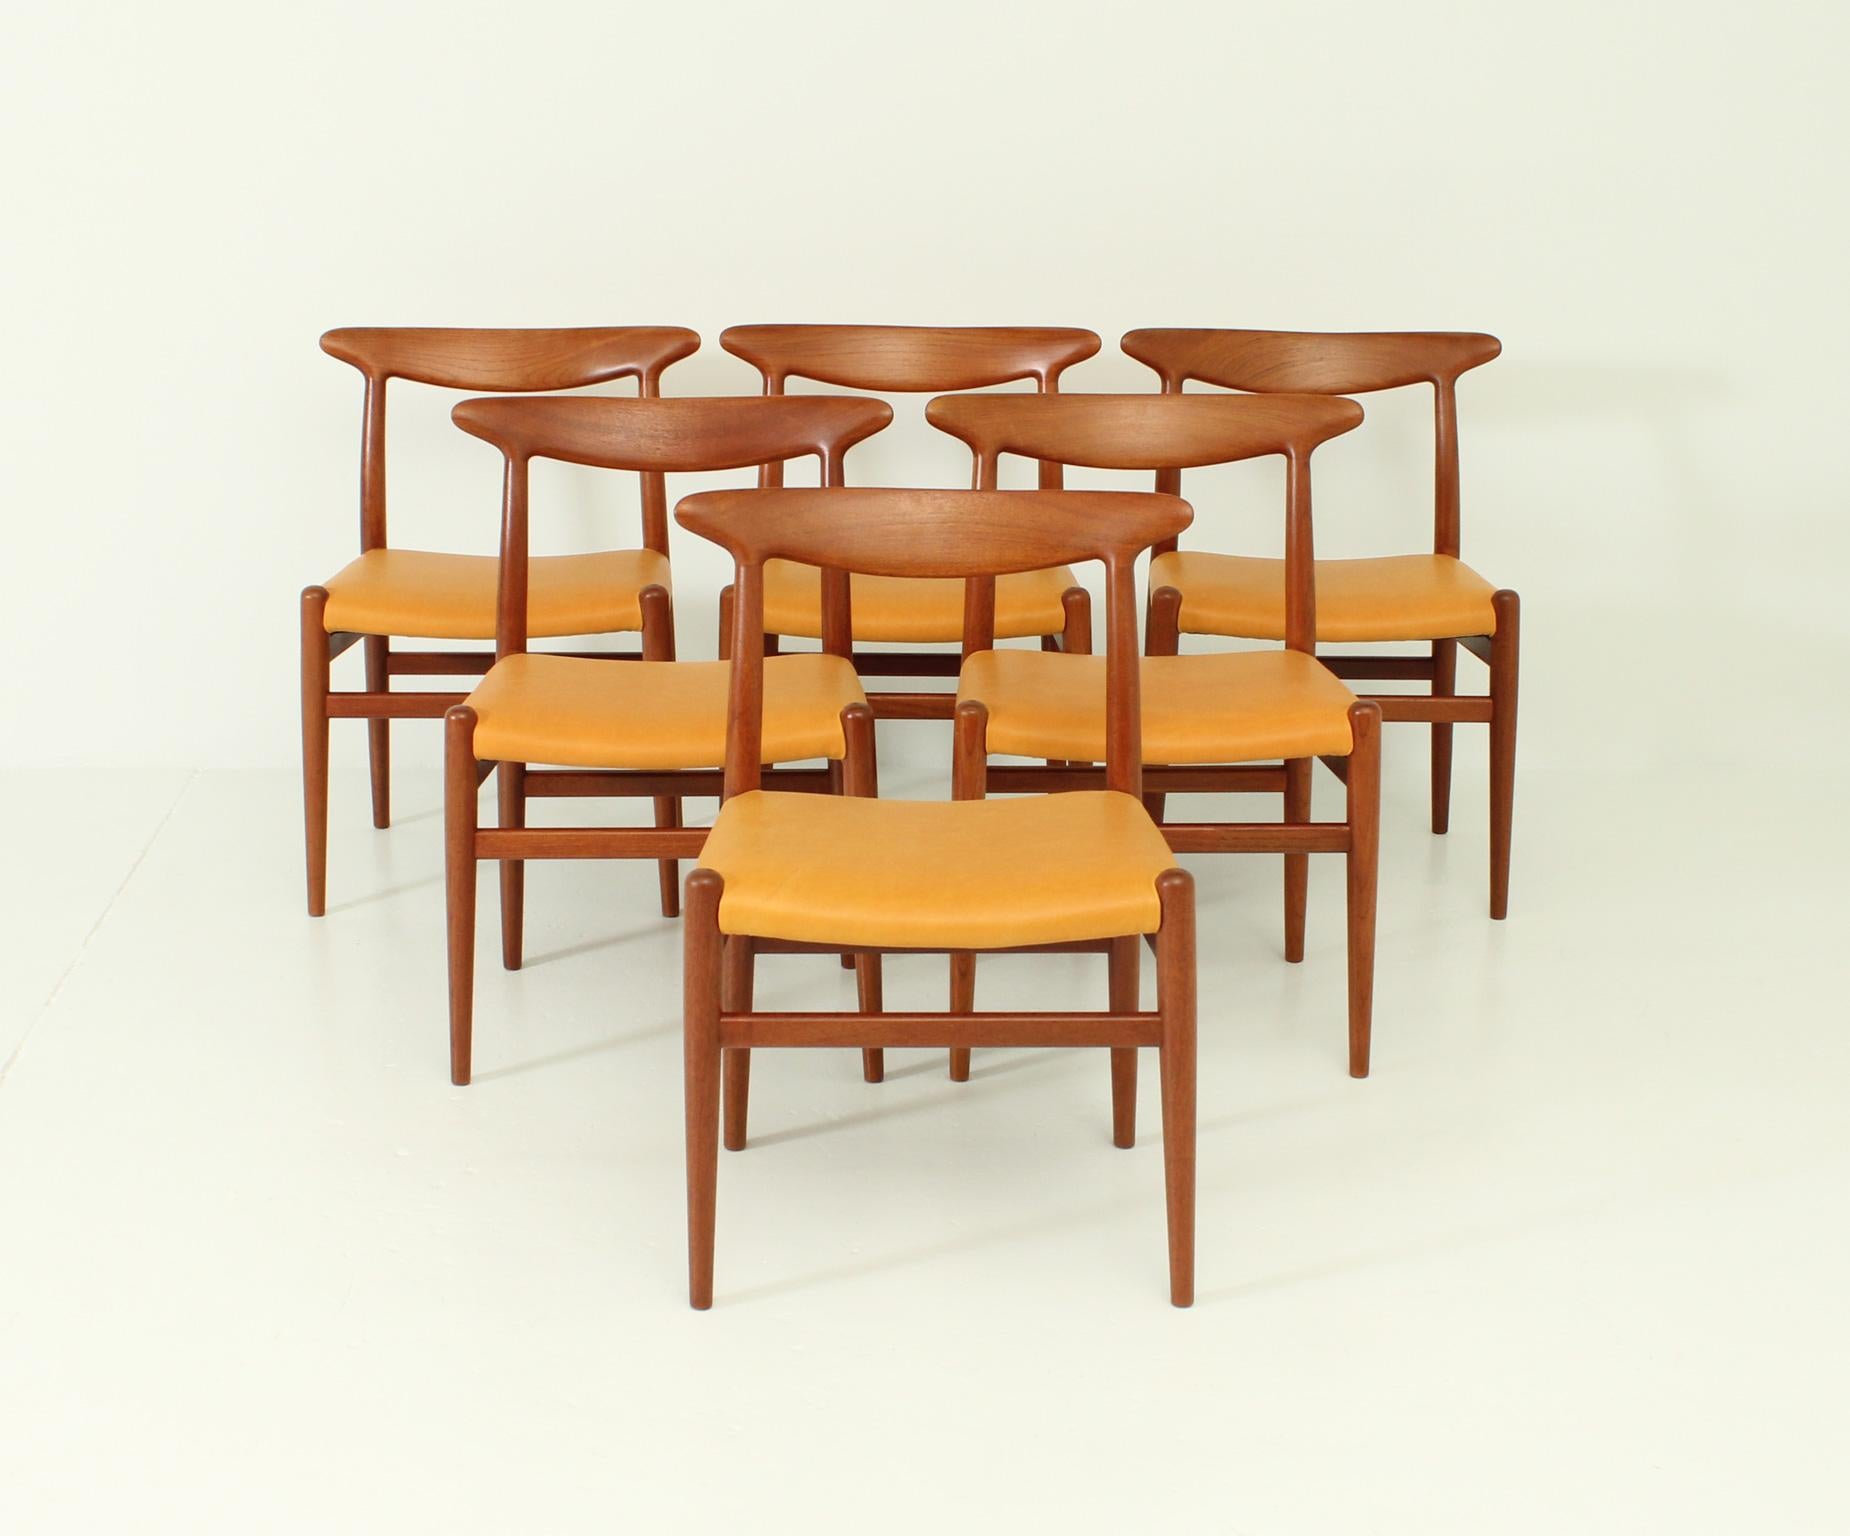 Satz von sechs W2-Stühlen, entworfen 1953 von Hans Wegner für C. M. Madsen, Dänemark. Massives Teakholz und neue Polsterung mit hellbraunem Leder.